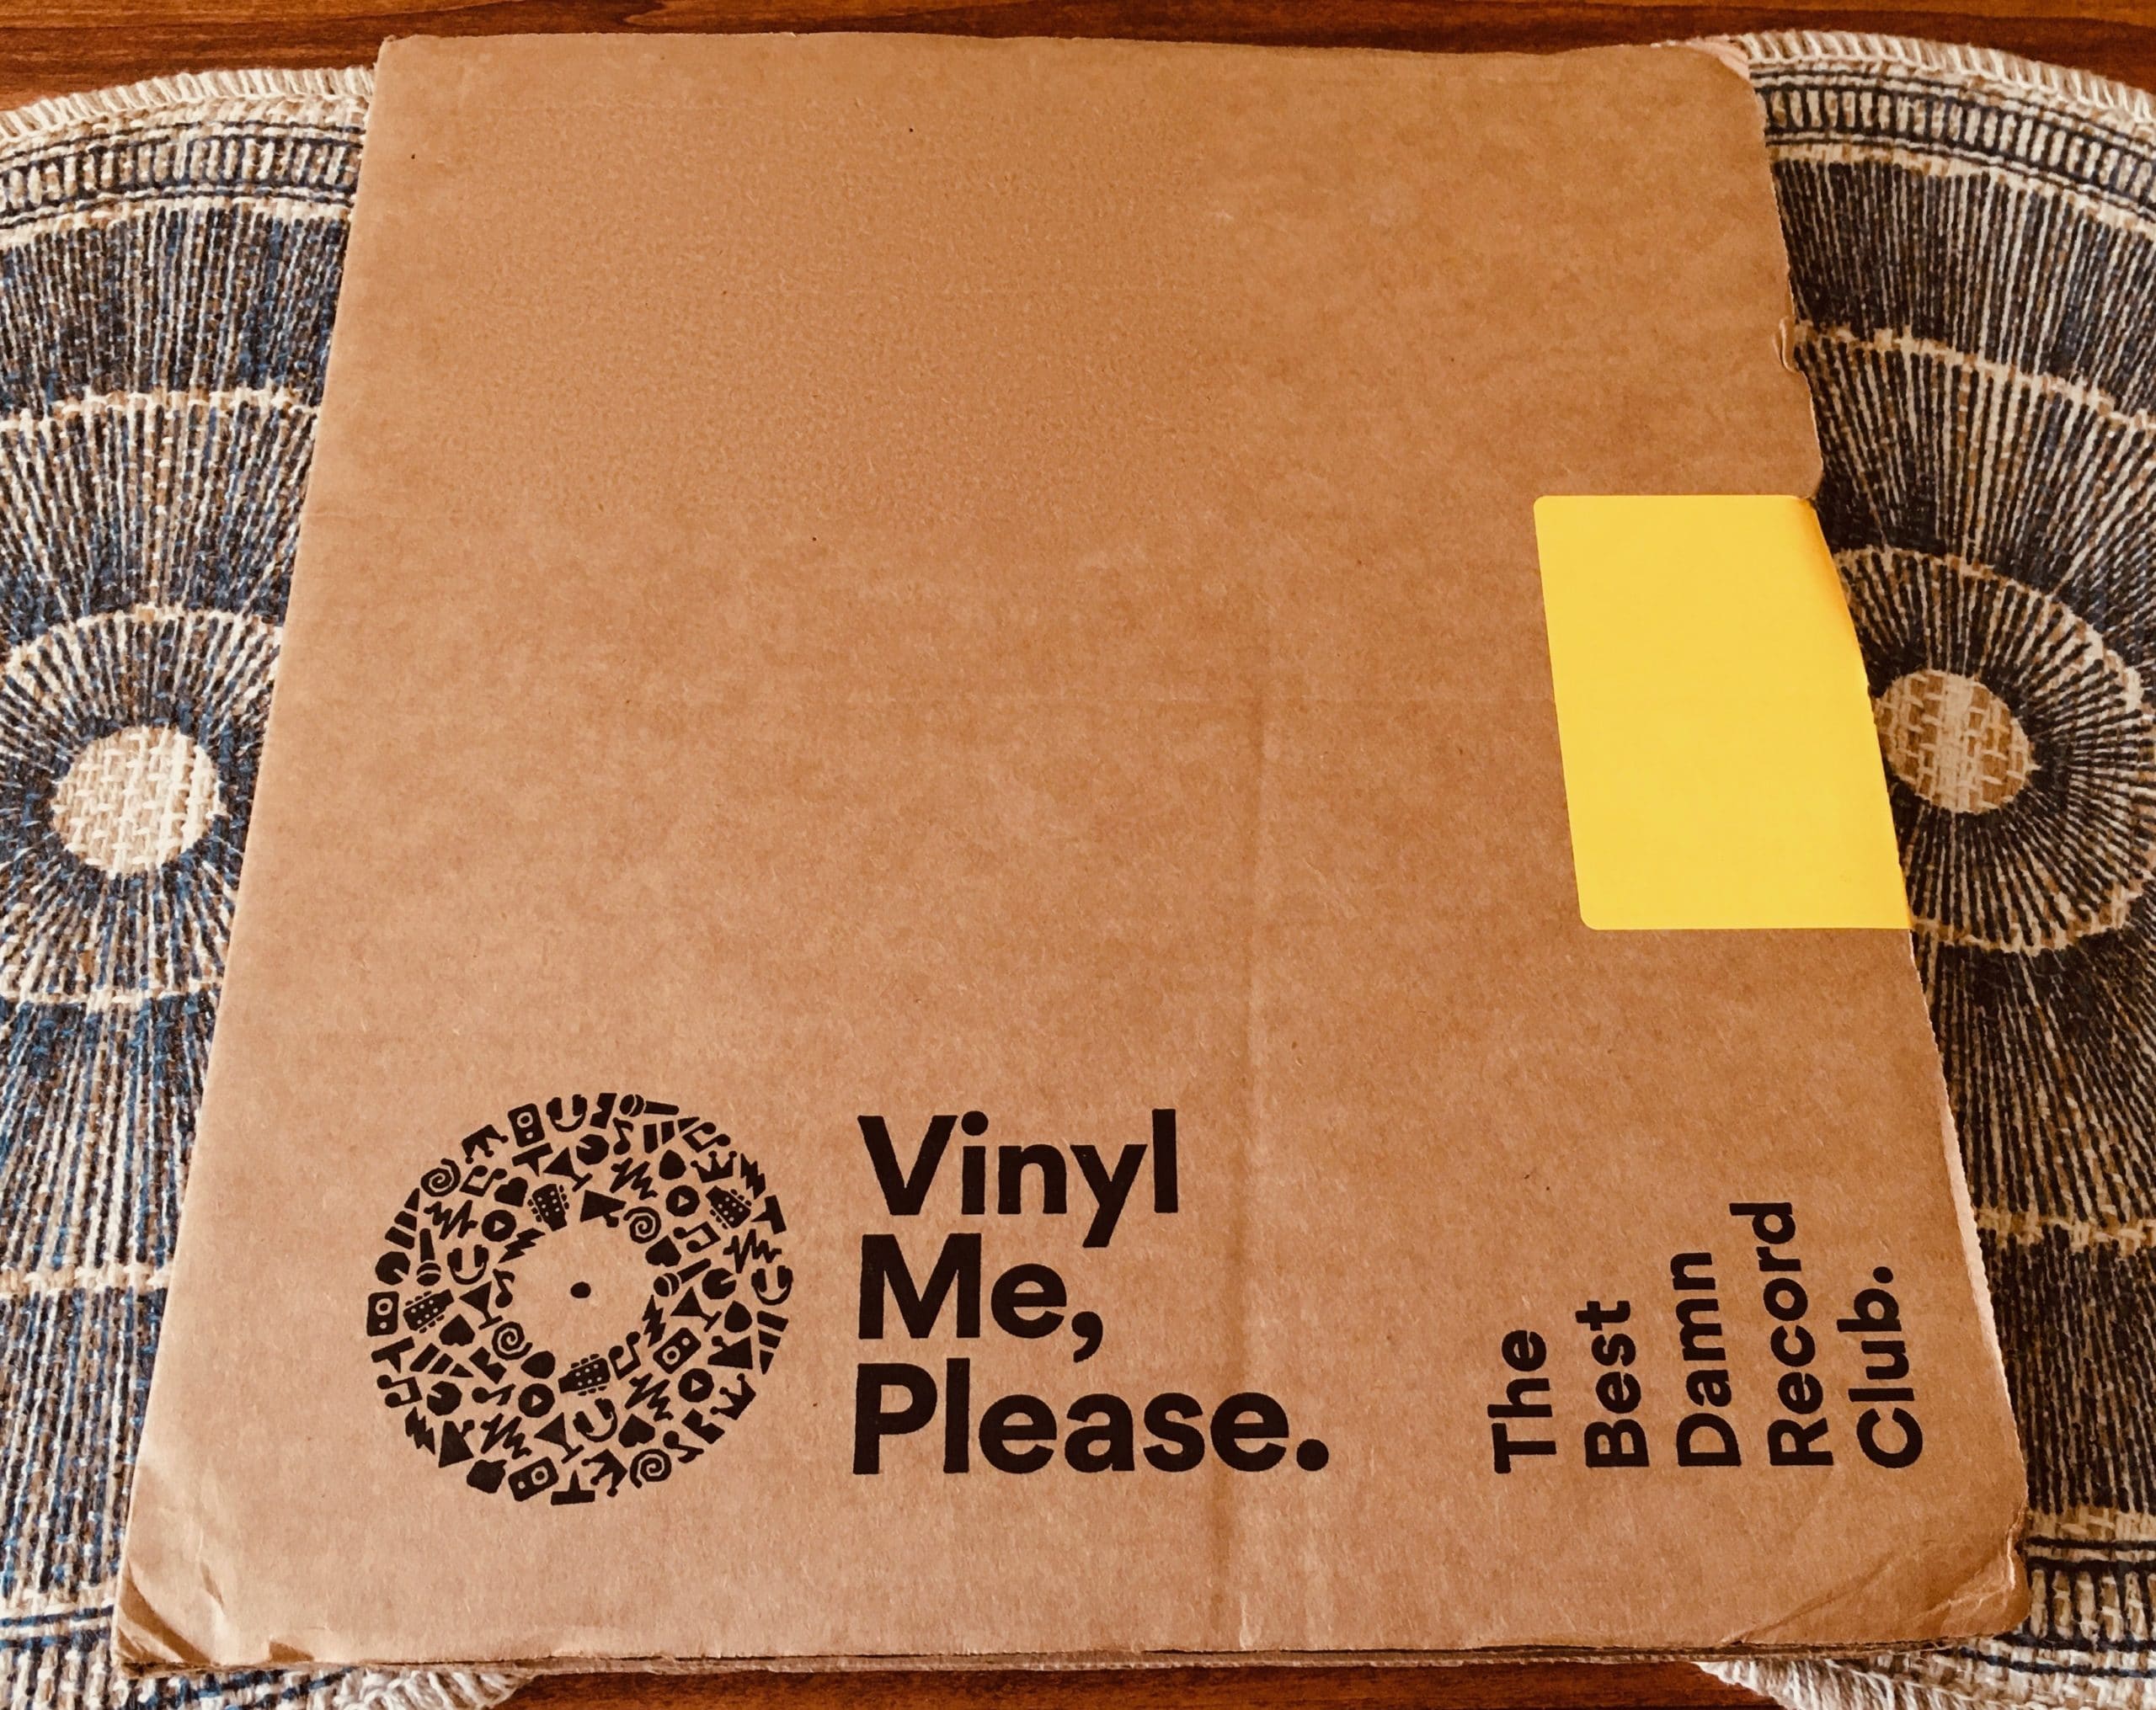 Vinyl me, please